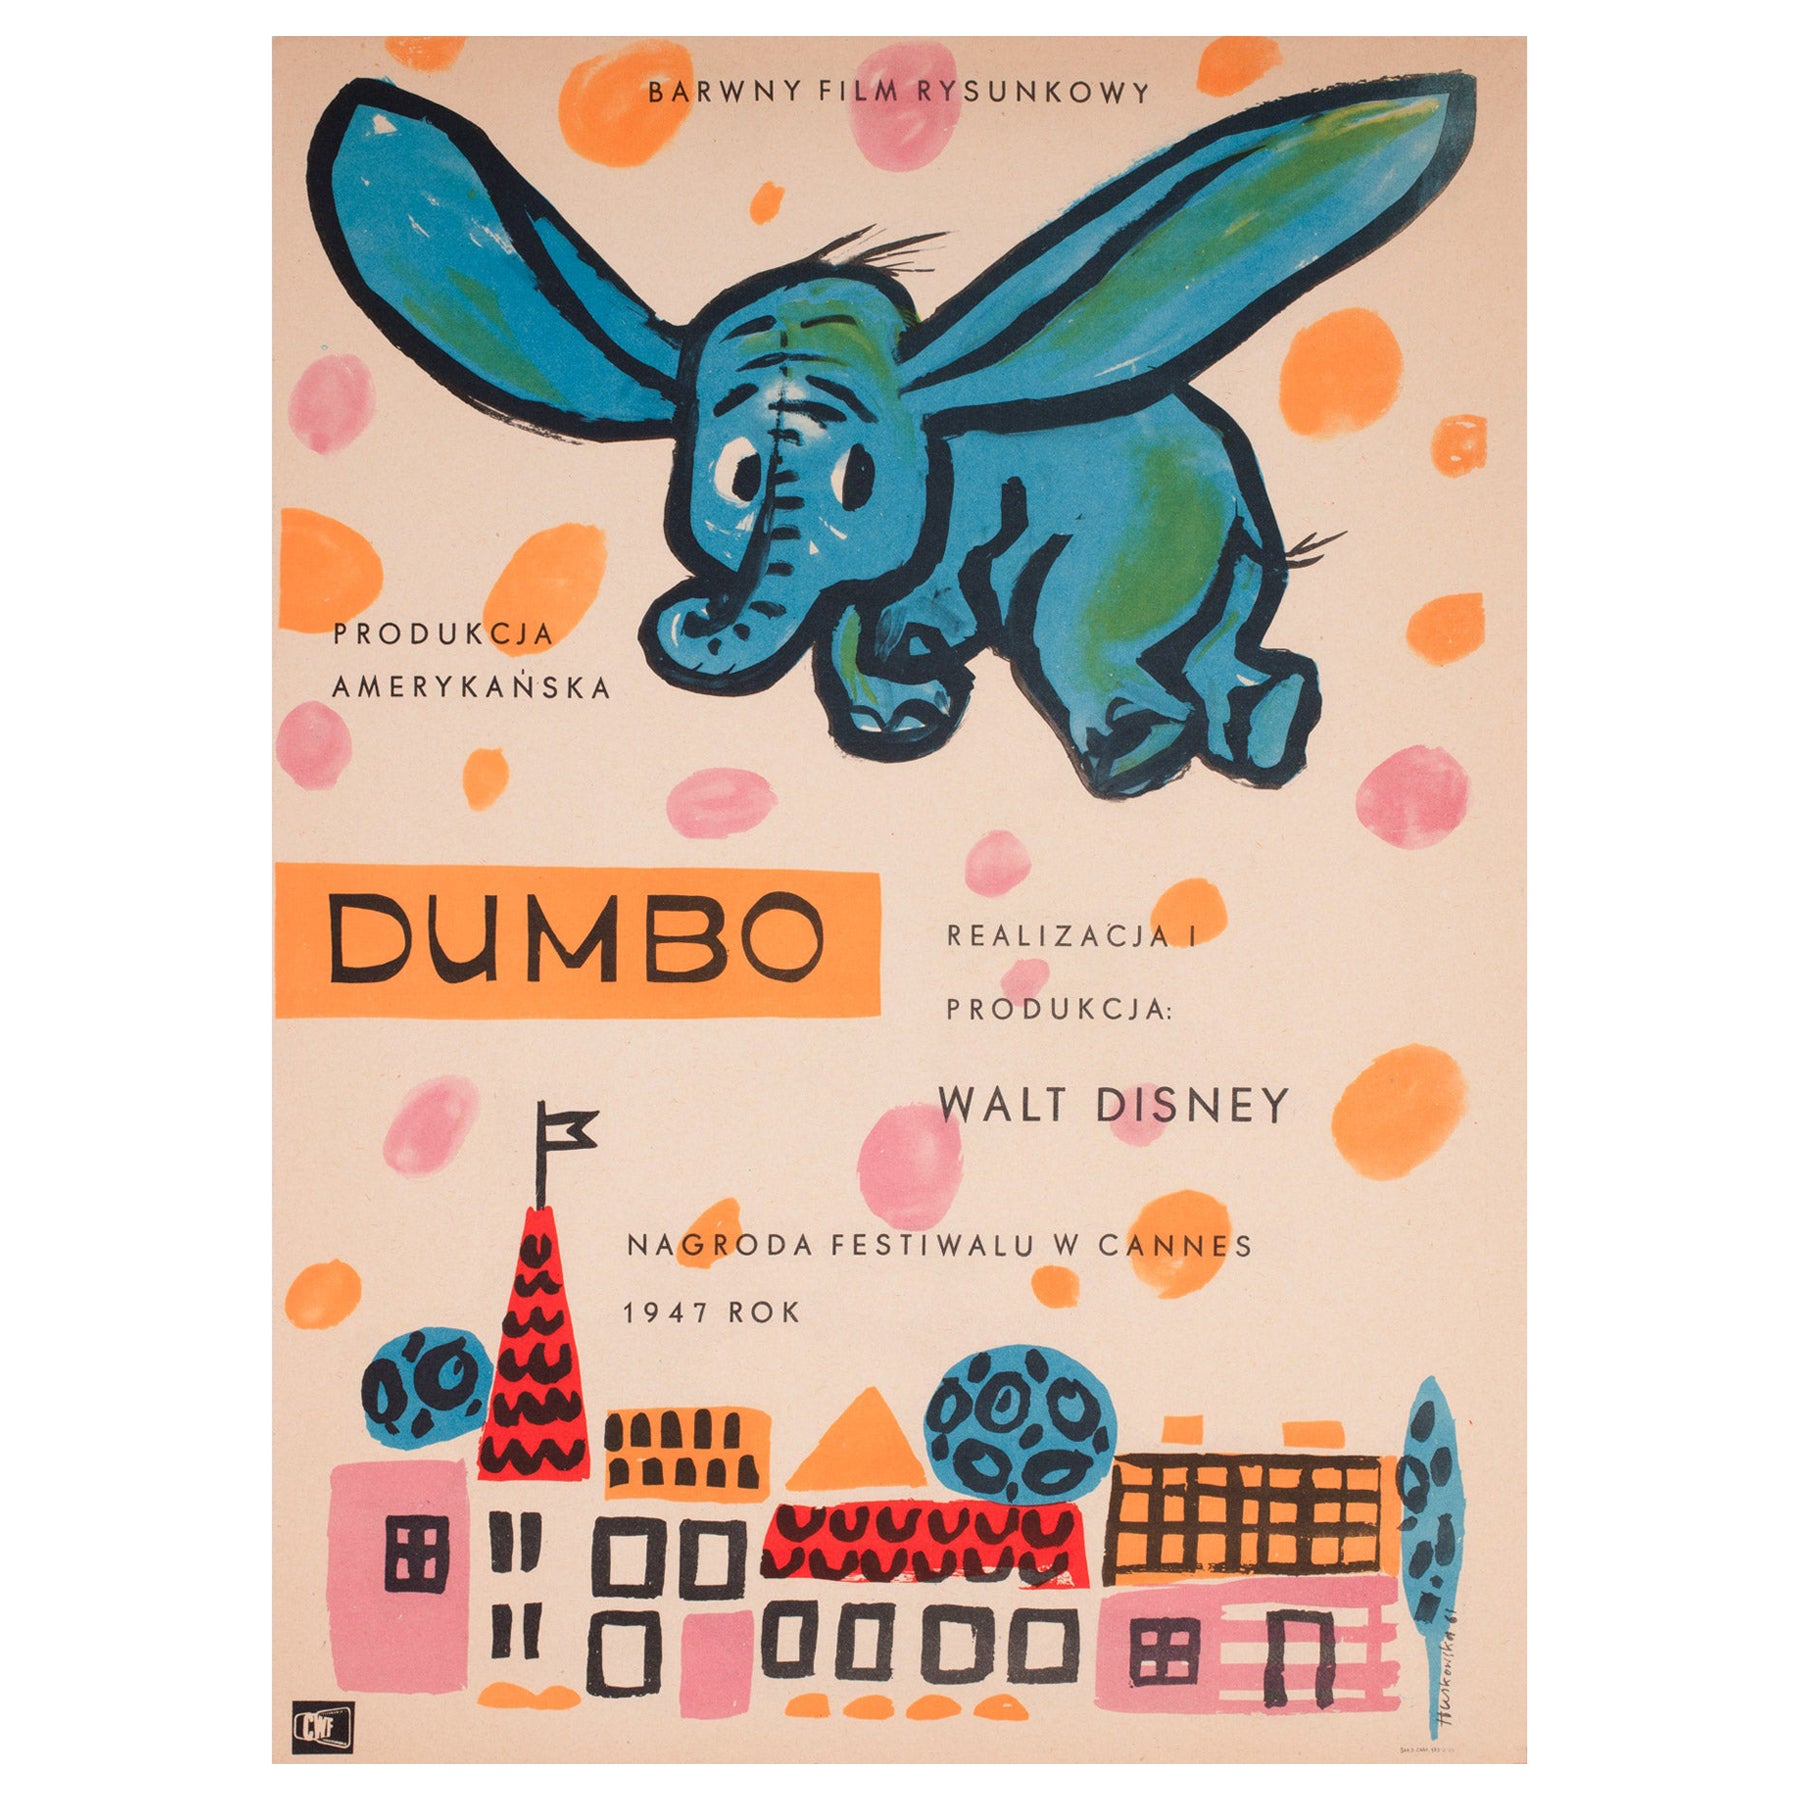 Affiche polonaise du film Dumbo, Anna Huskowska, 1961